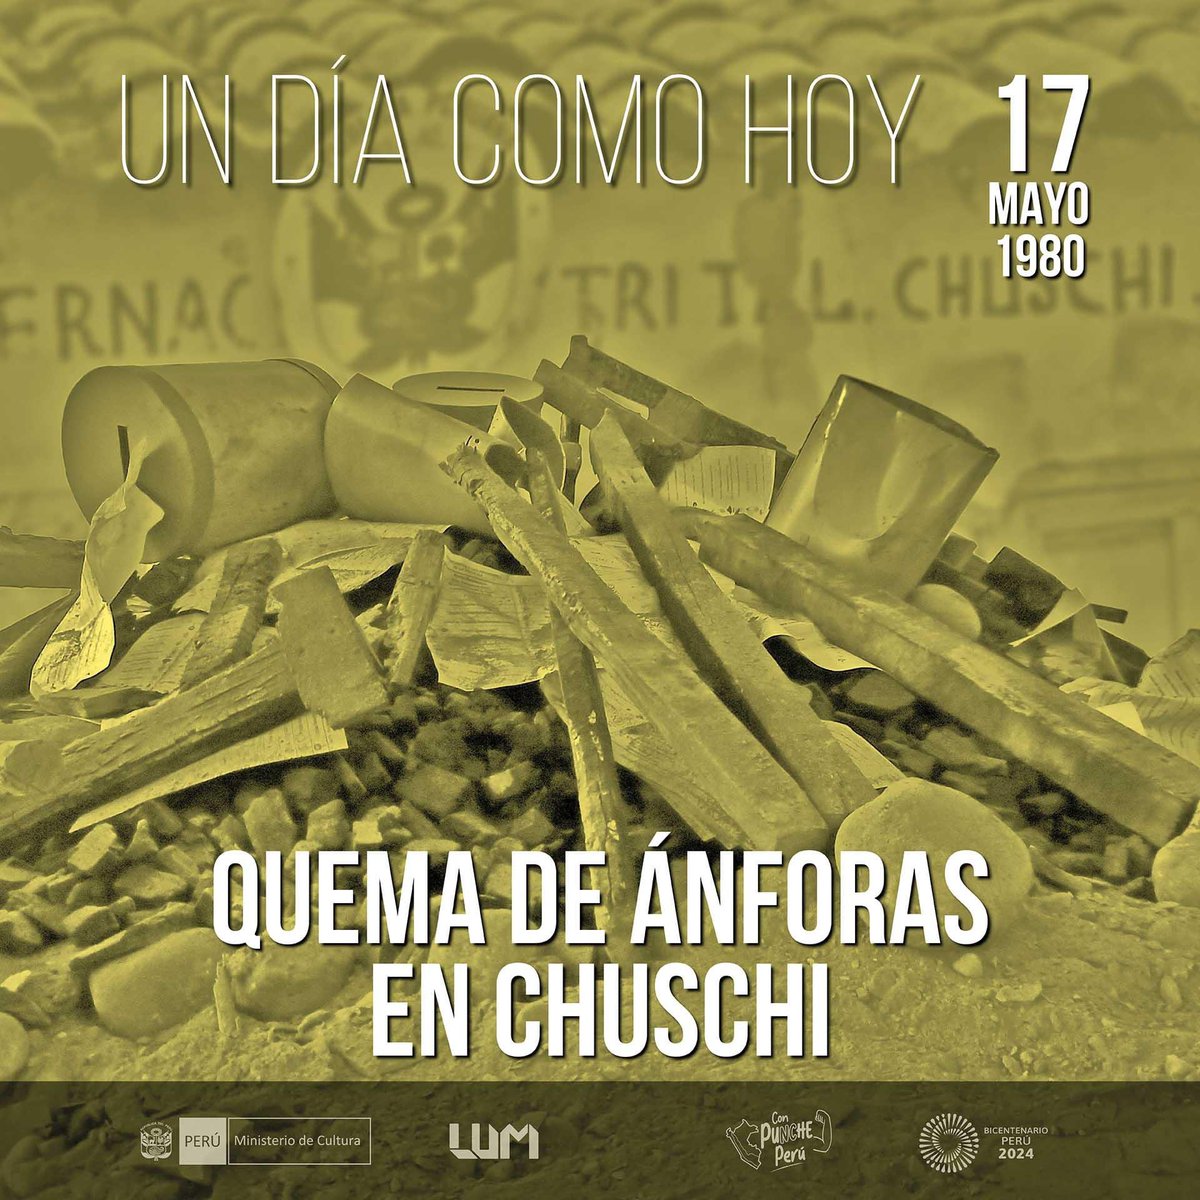 #UnDíaComoHoy,la organización terrorista Sendero Luminoso realizó su primer ataque en la comunidad de Chuschi (Ayacucho),el 17 de mayo de 1980, al quemar las ánforas electorales,atentando contra la democracia y dando inicio al terror que acabaría con la vida de miles de peruanos.